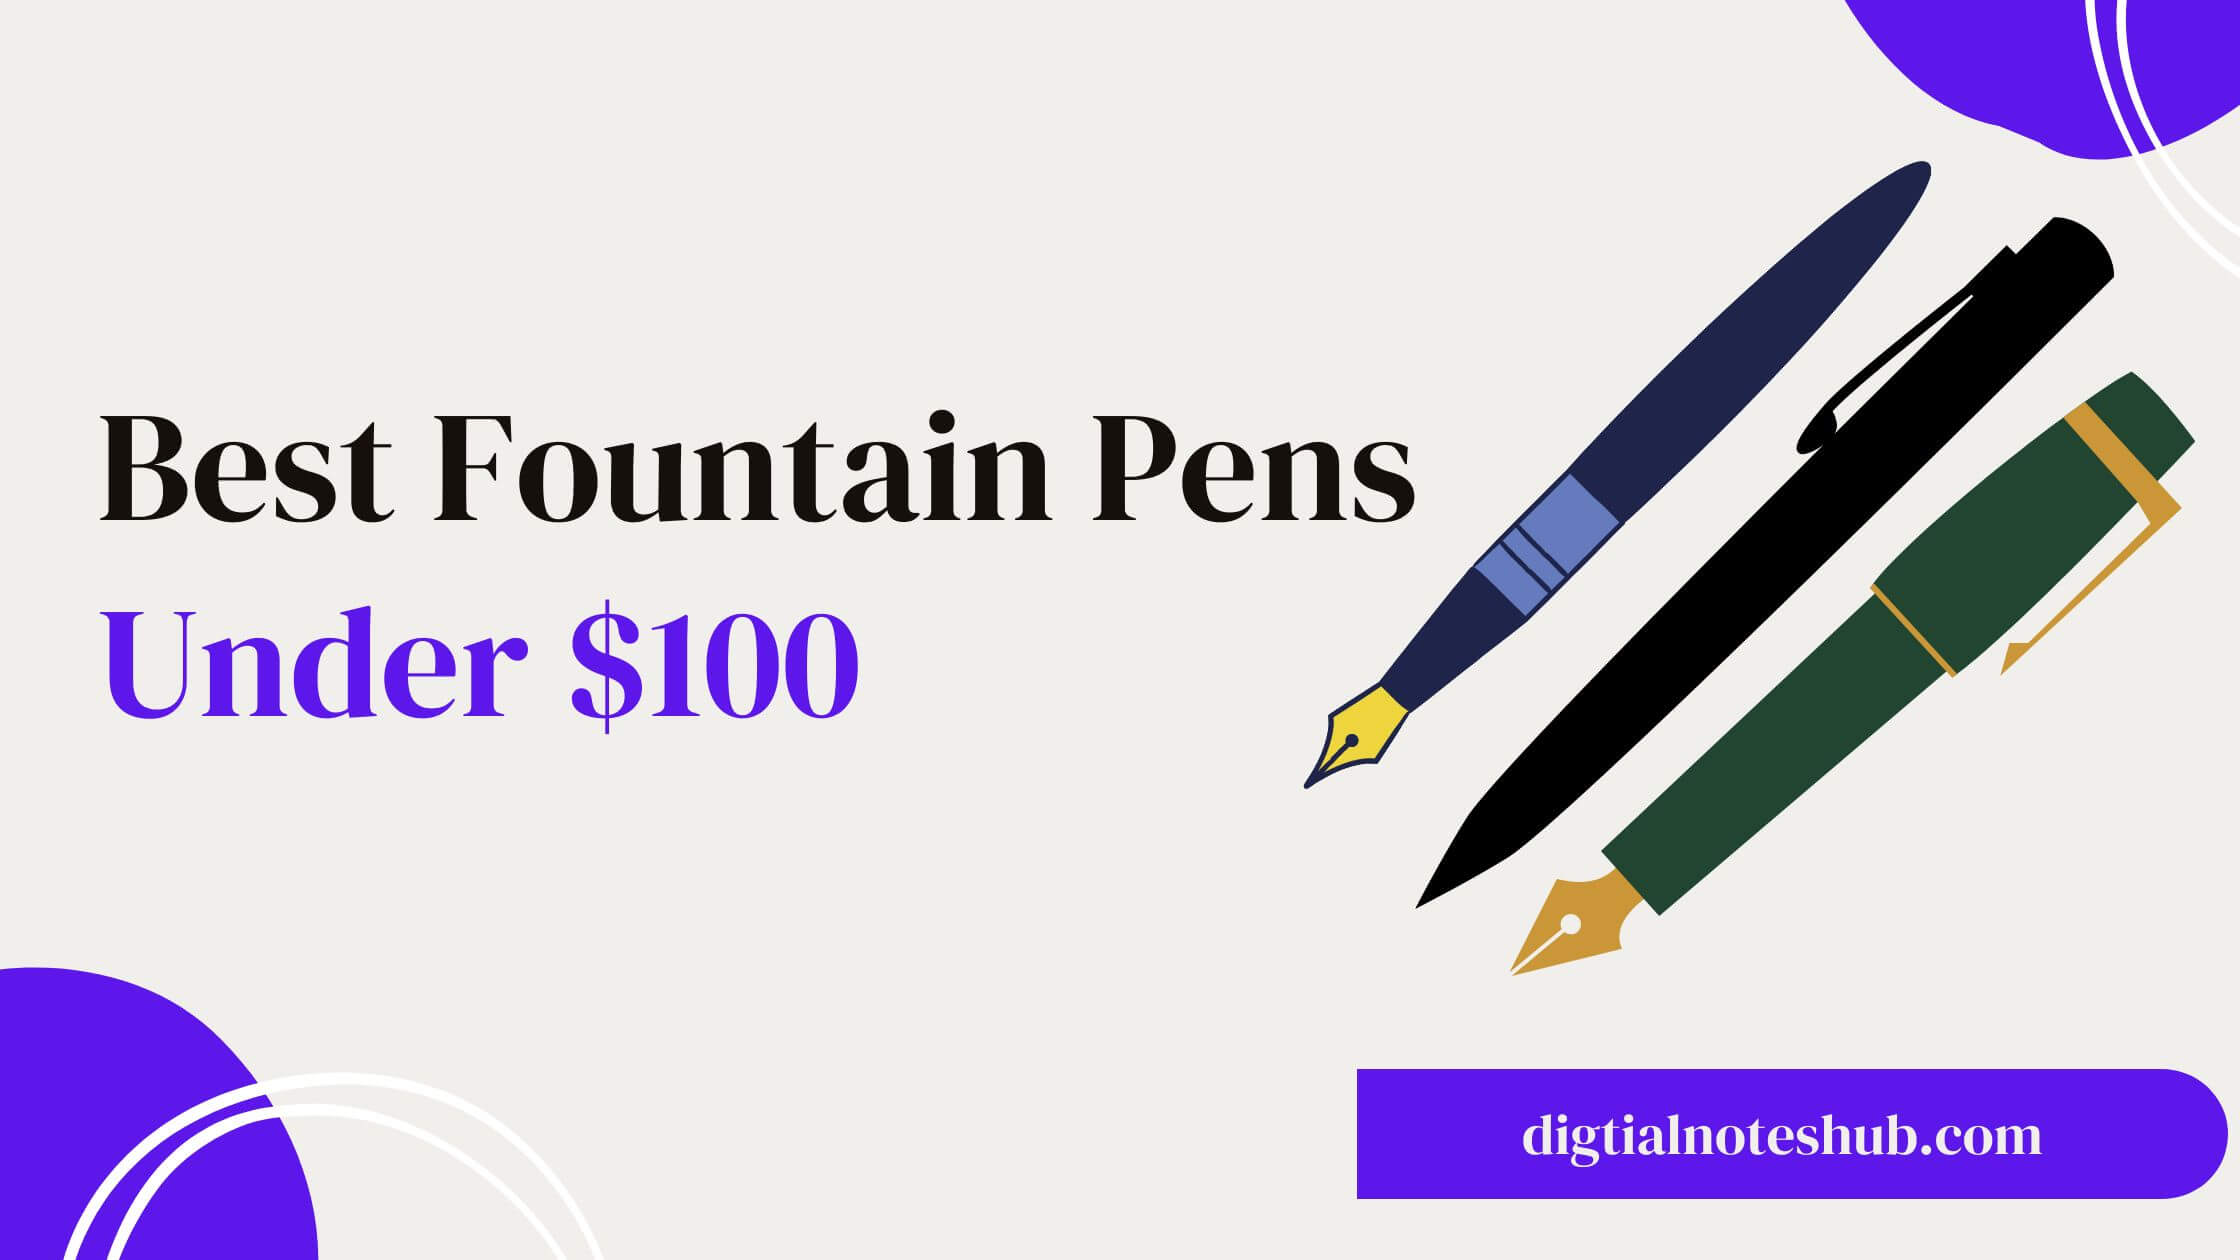 Best fountain pens under $100